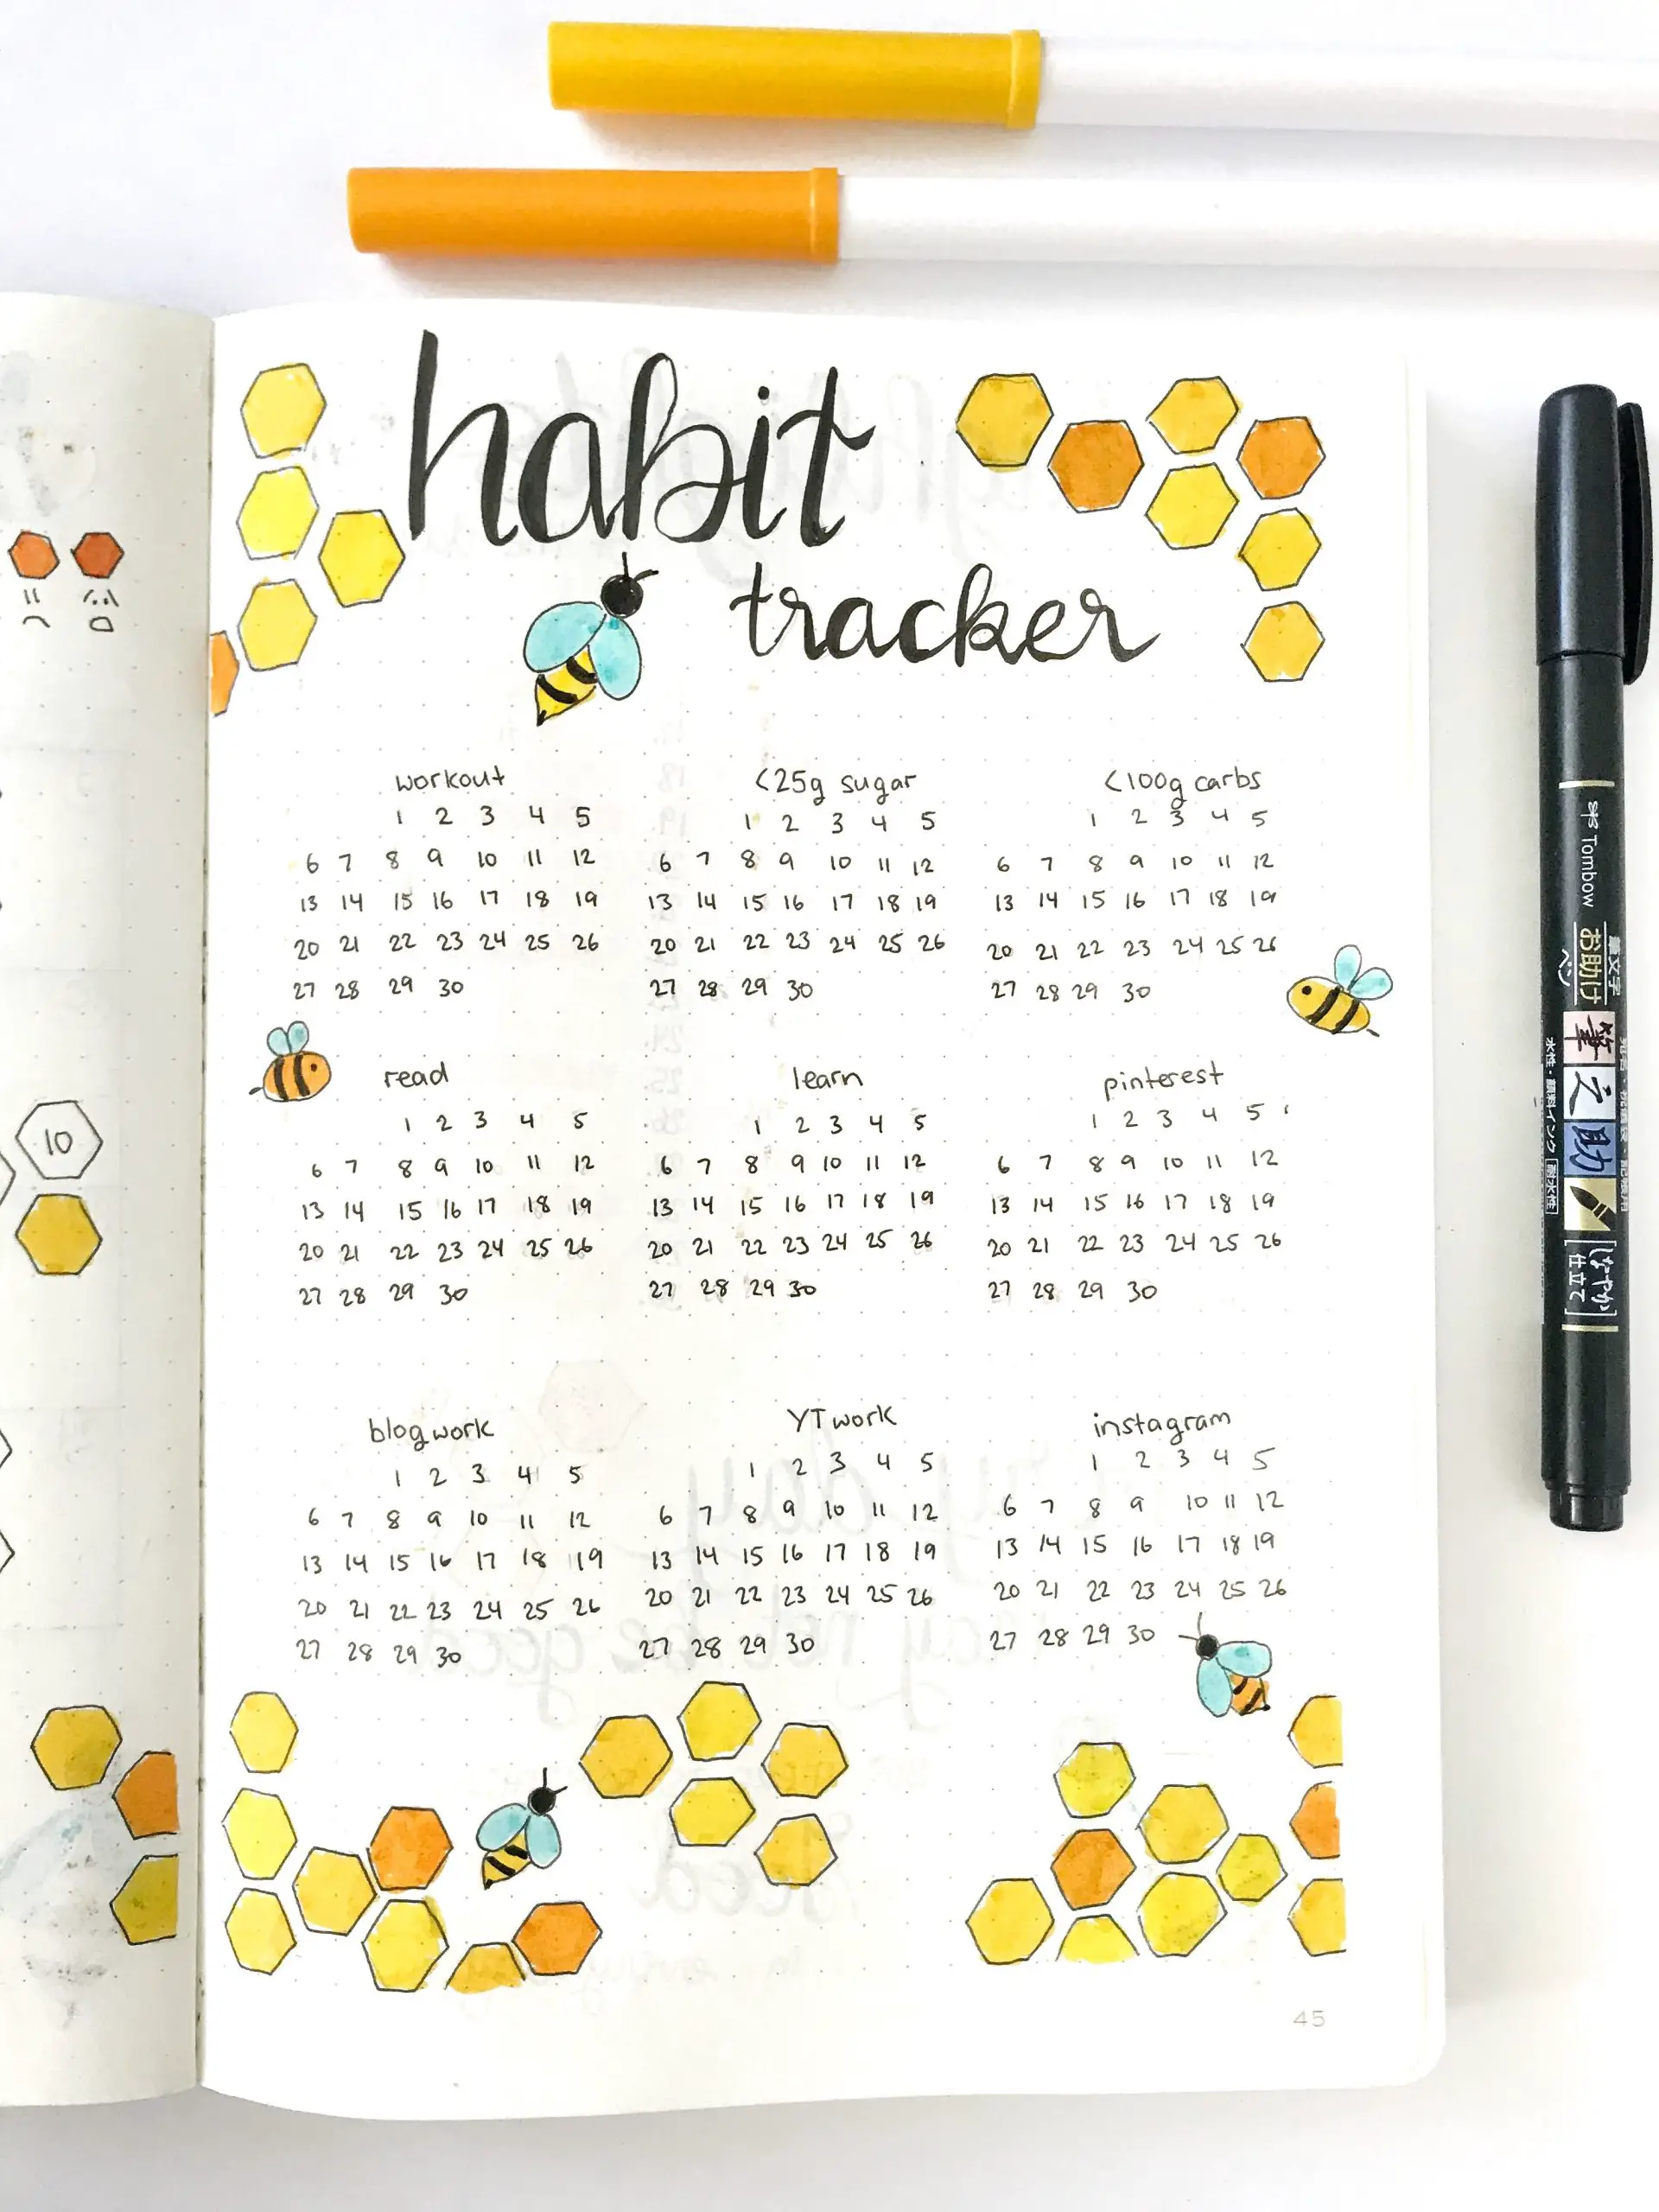 Bullet journal monthly habit tracker